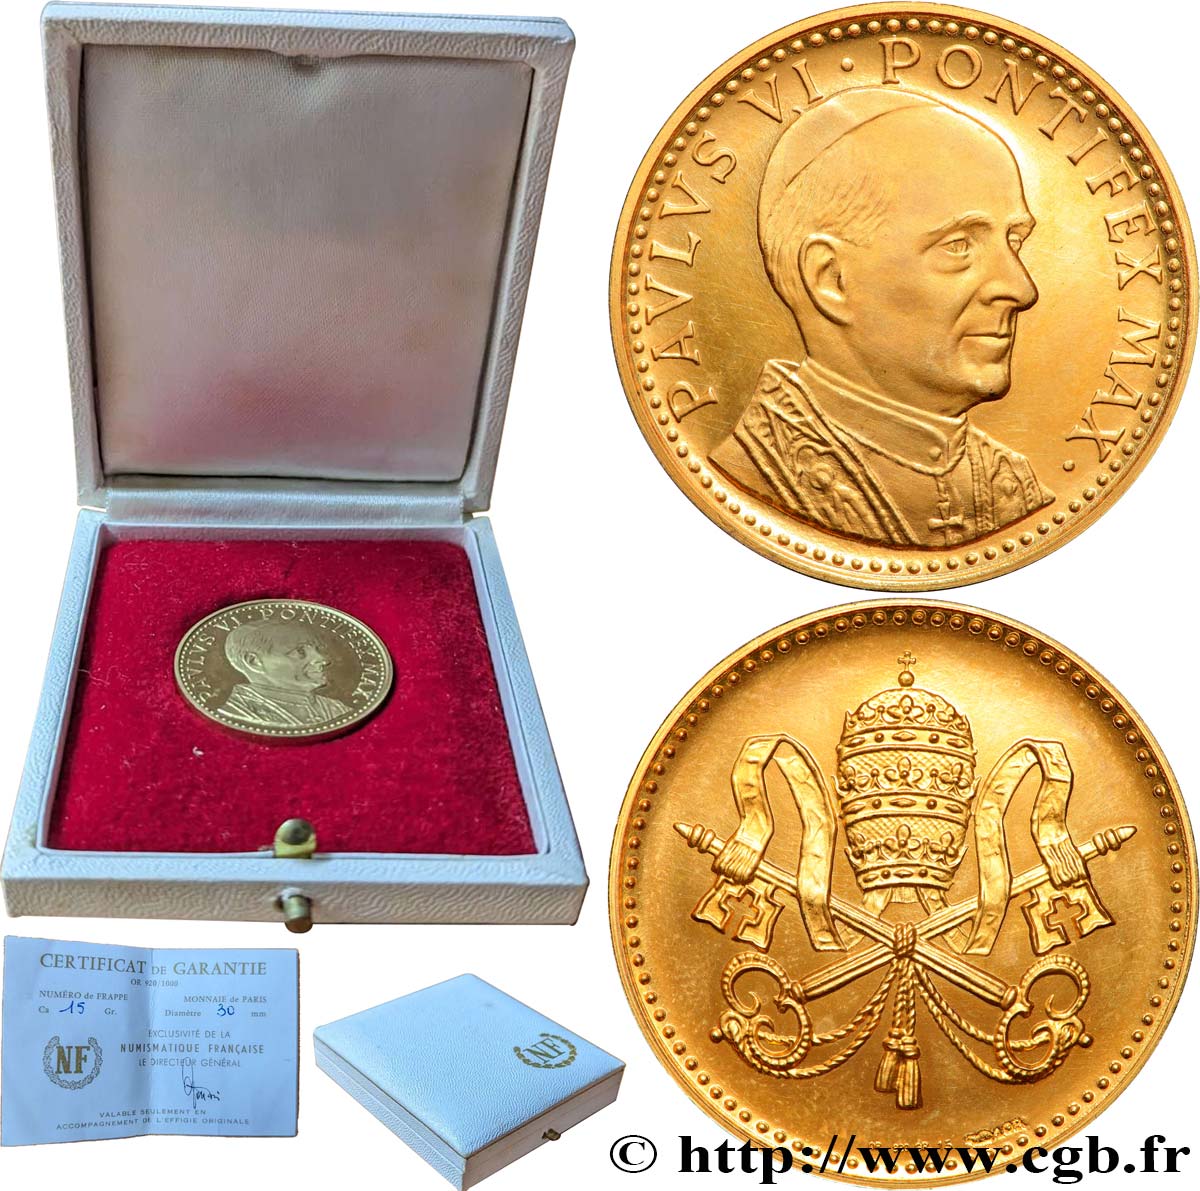 VATICAN AND PAPAL STATES Médaille, Paul VI, Pèlerinage en Terre Sainte AU